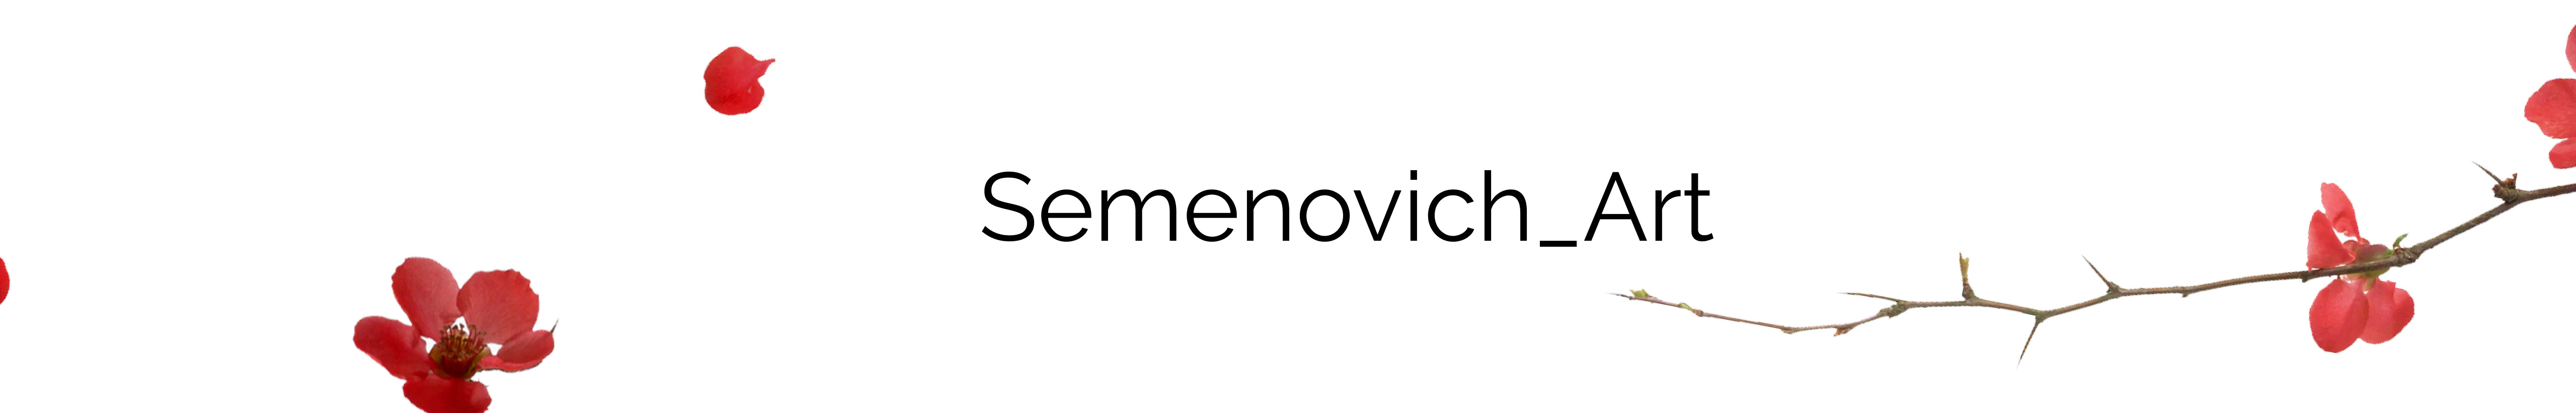 Julia Semenovich profil başlığı